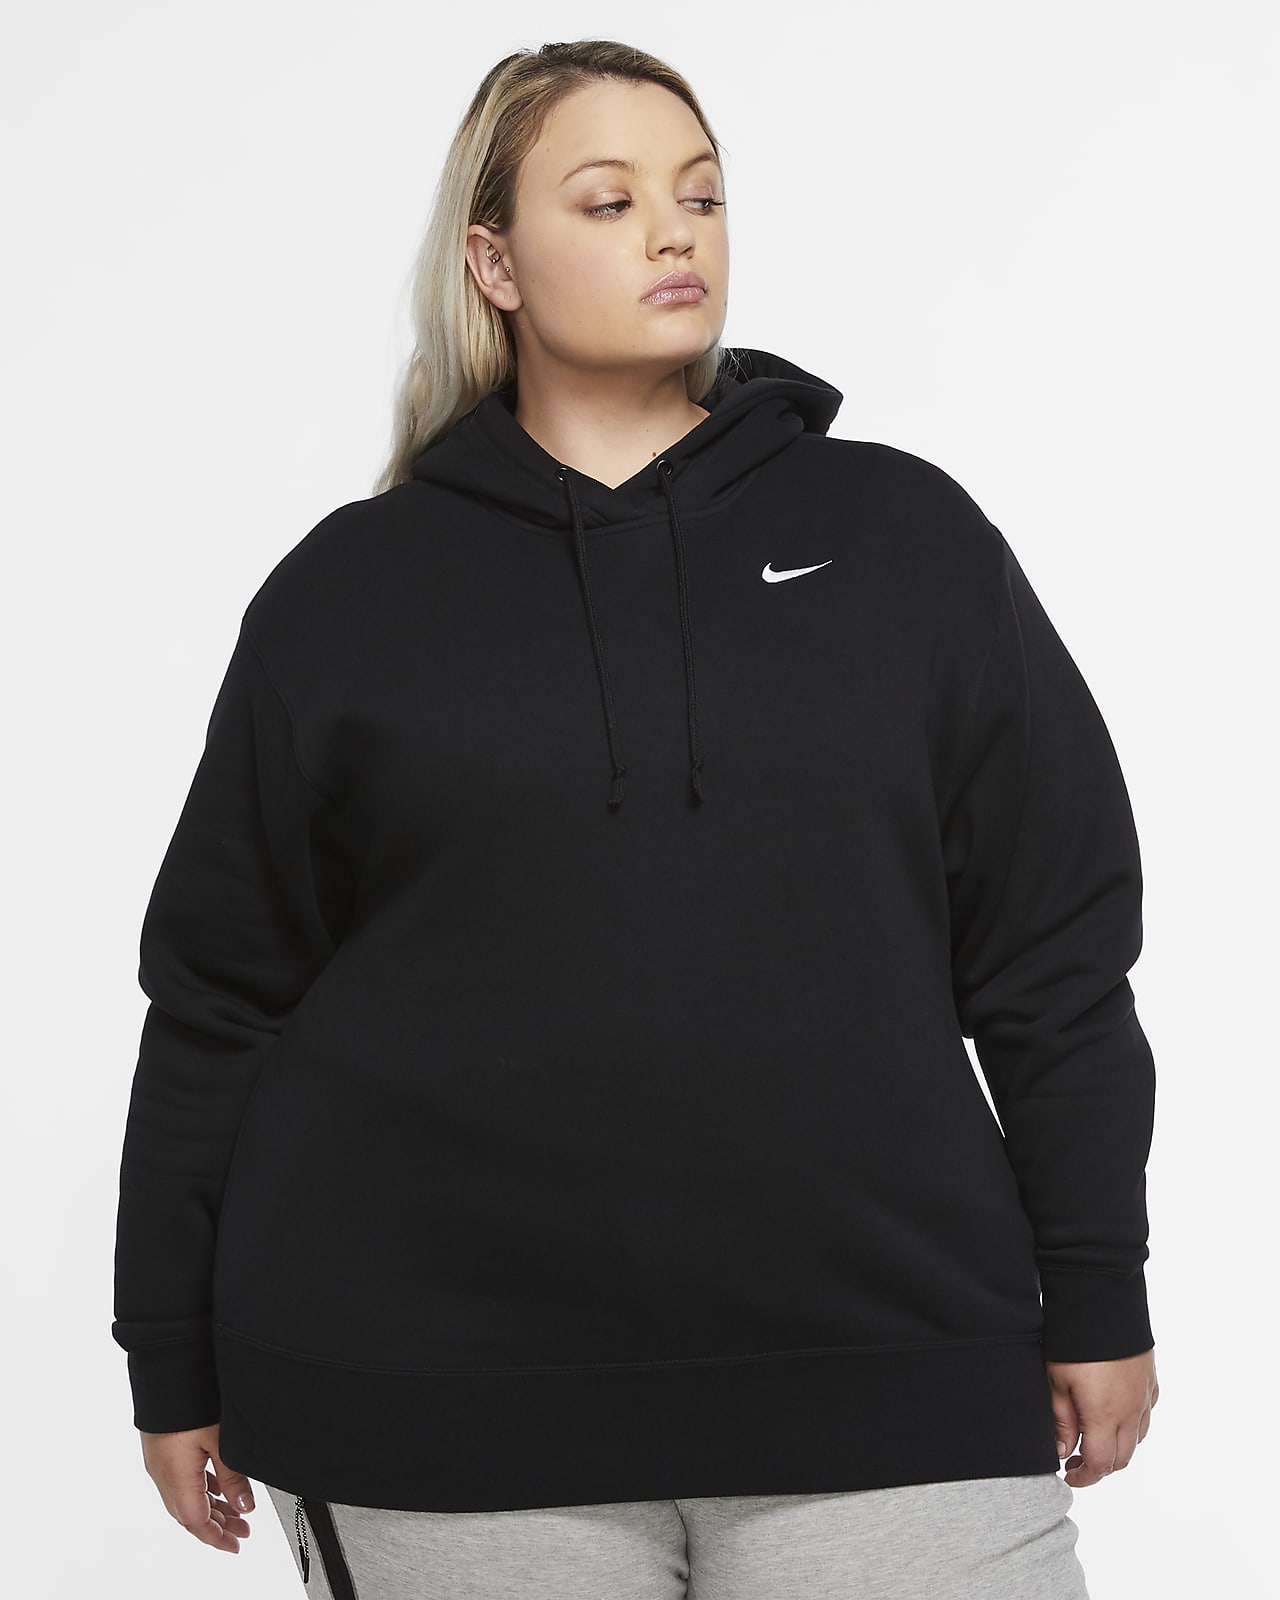 Nike Sportswear Women's Fleece Pullover (Plus Size). Nike EG